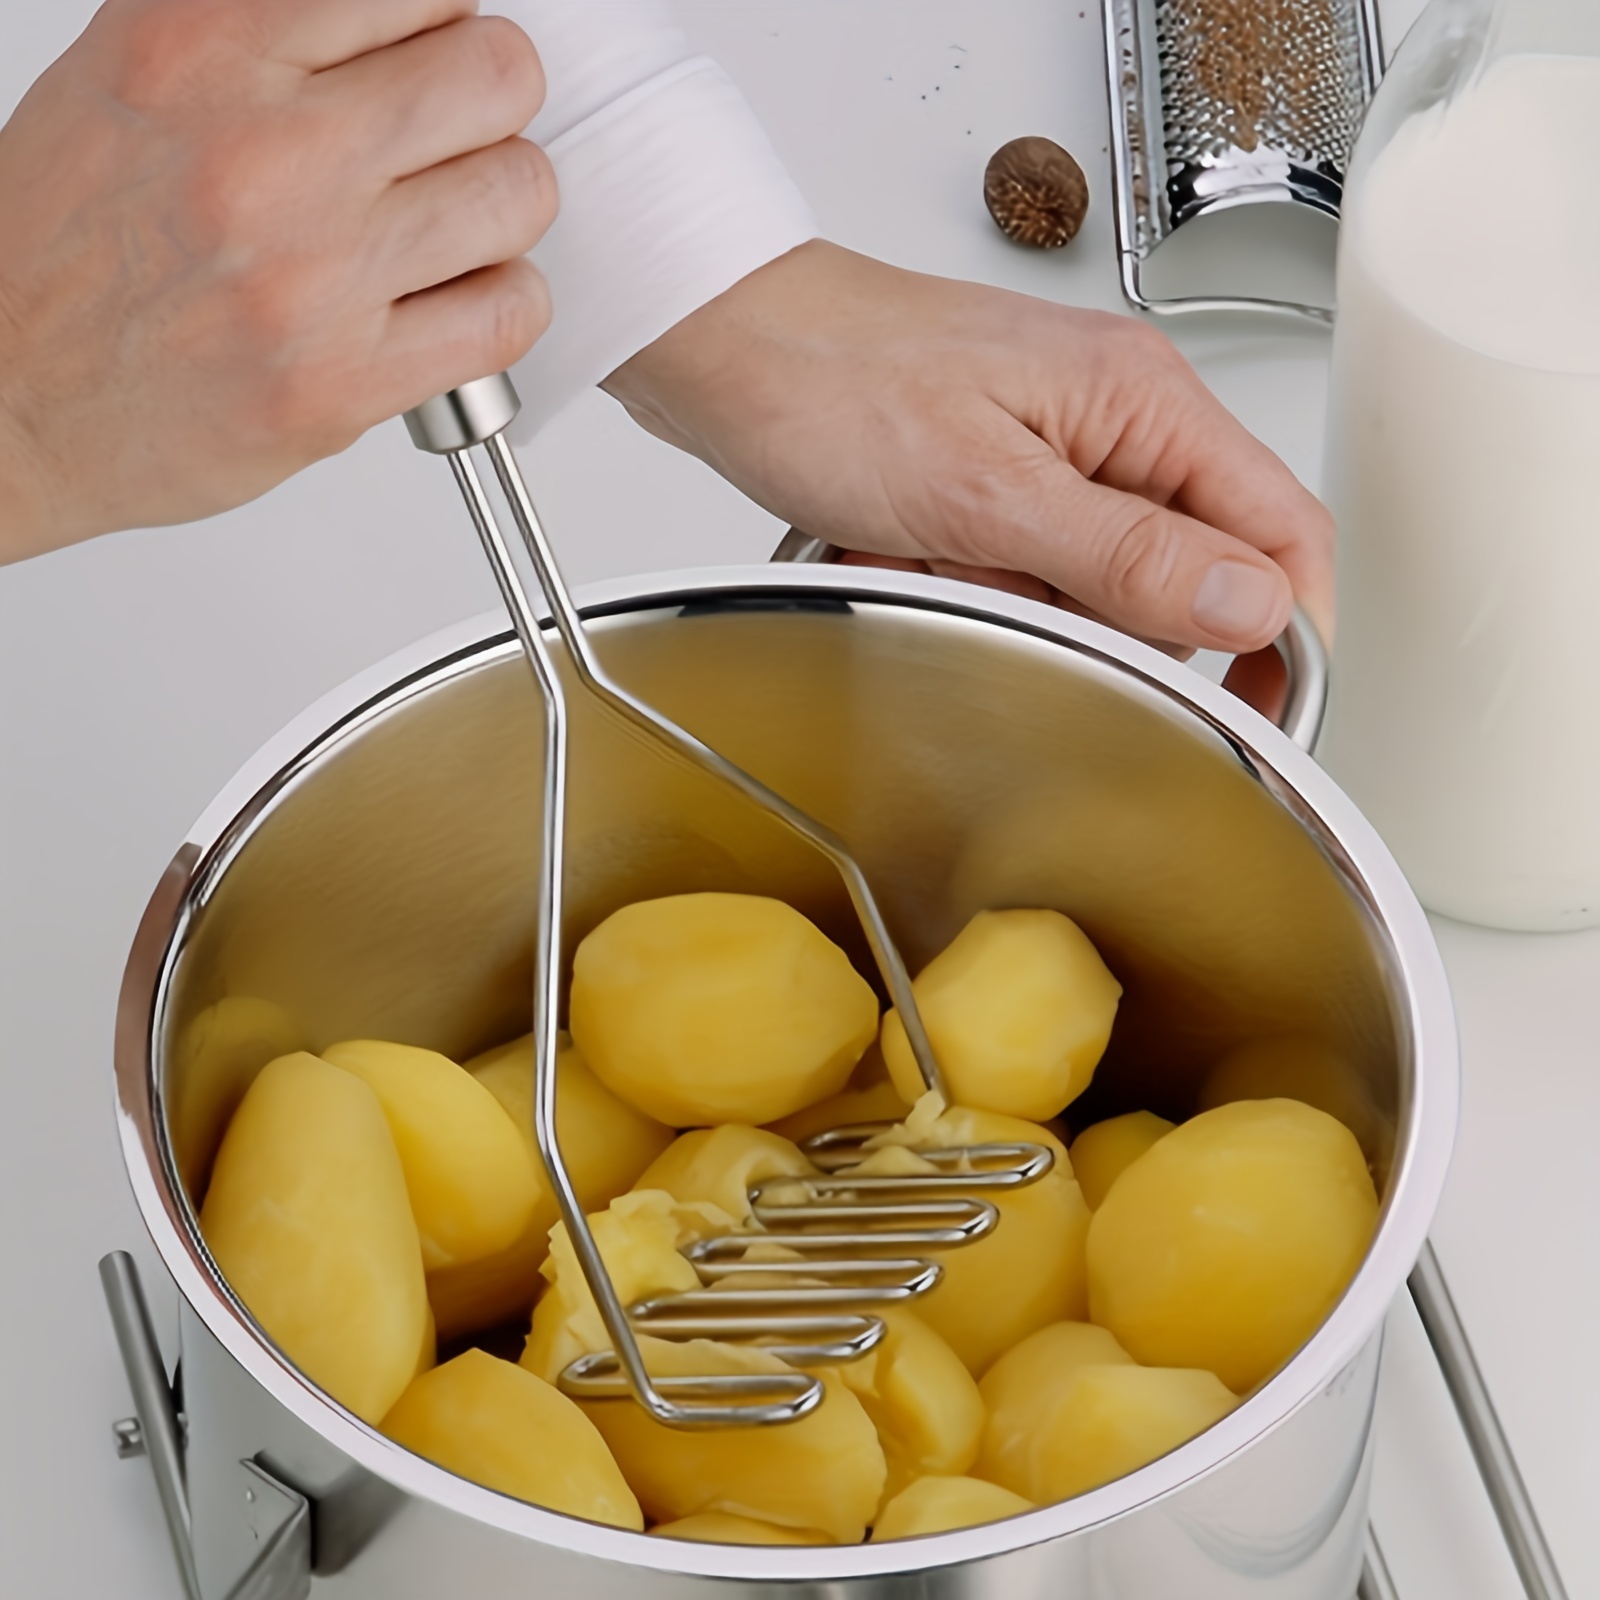 1pc Resin Potato Masher & Fruit Smasher, Ideal For Mashed Potatoes, Sweet  Potatoes, Fruit And More